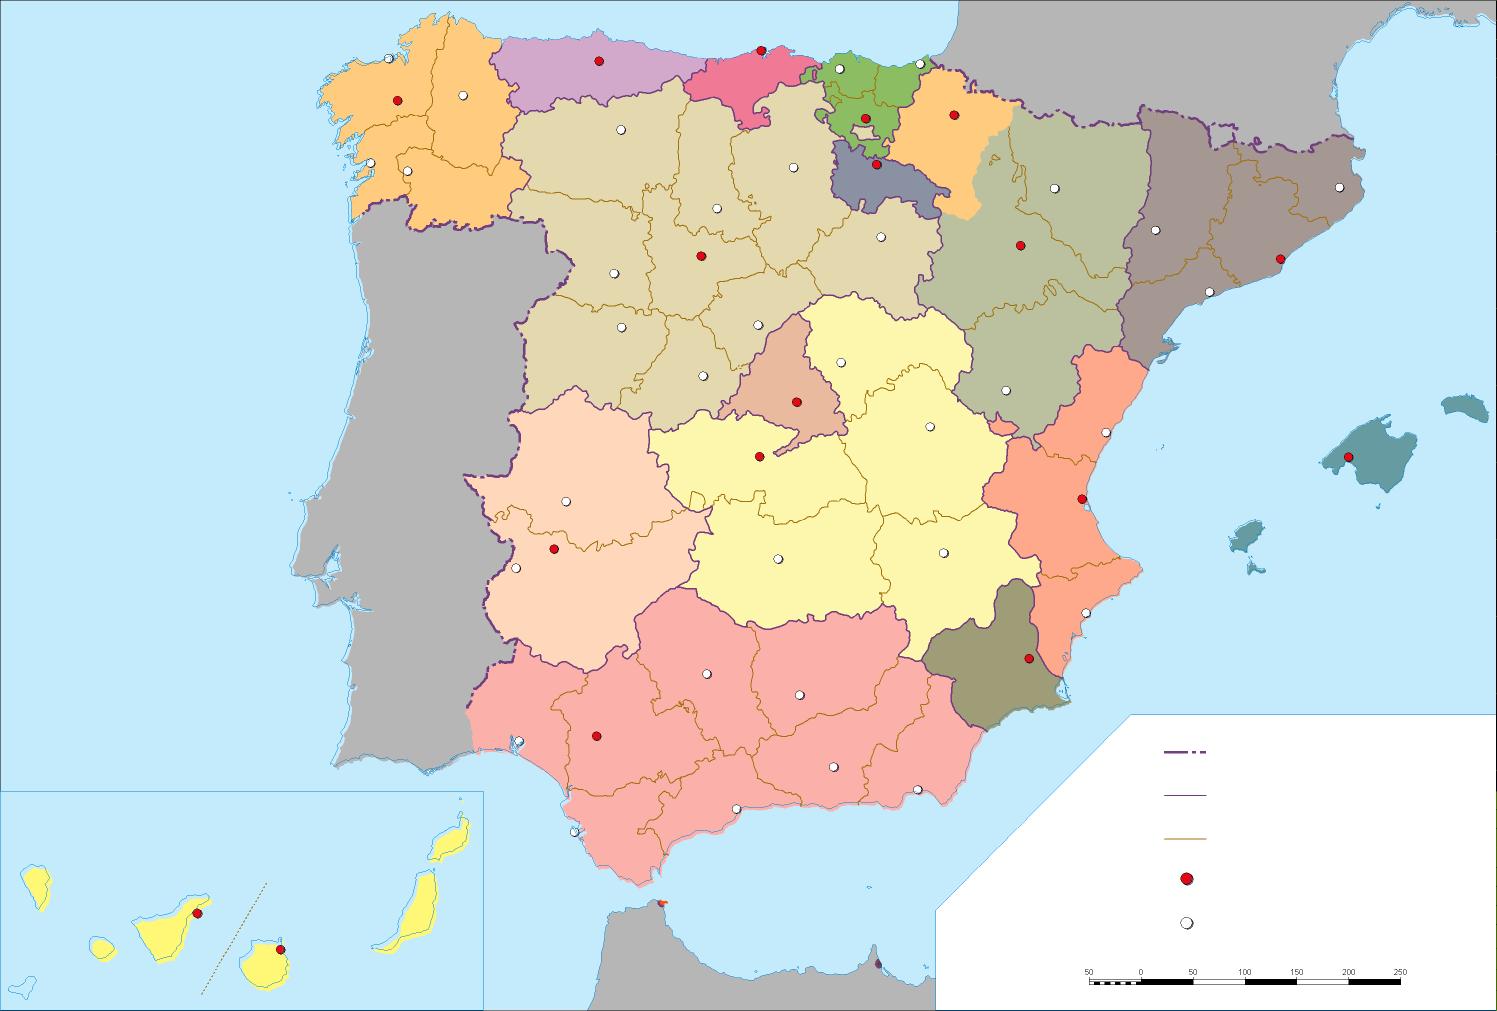 Mapa Político Mudo De España Tamaño Completo